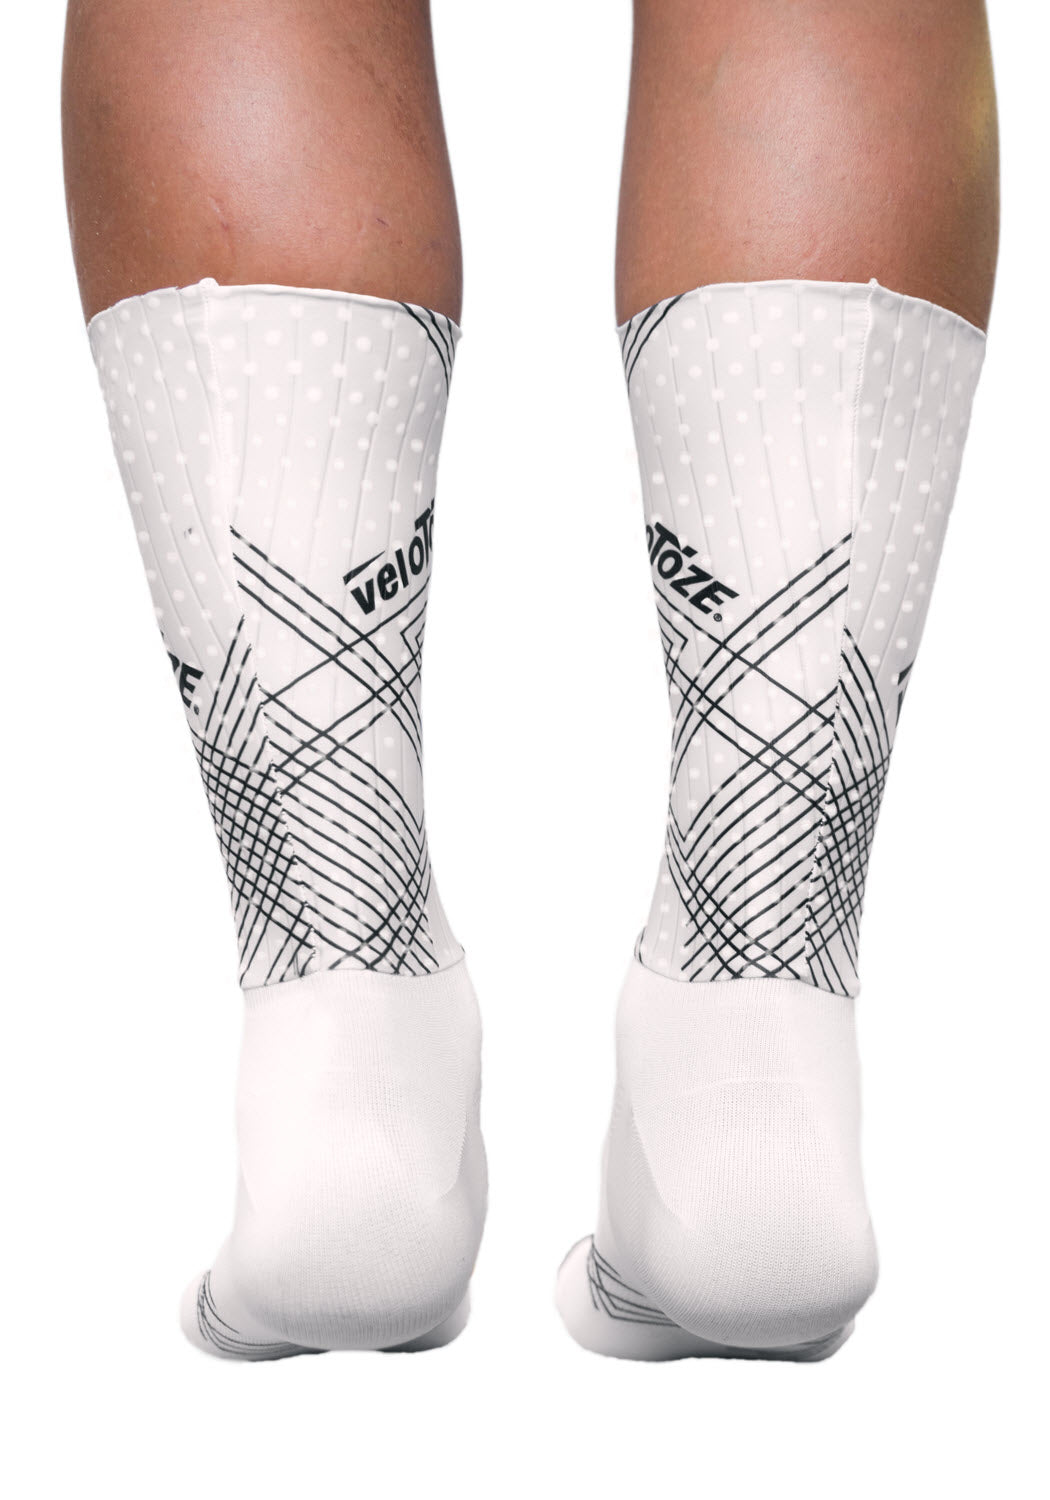 veloToze Aero Sock - White - Back of Sock